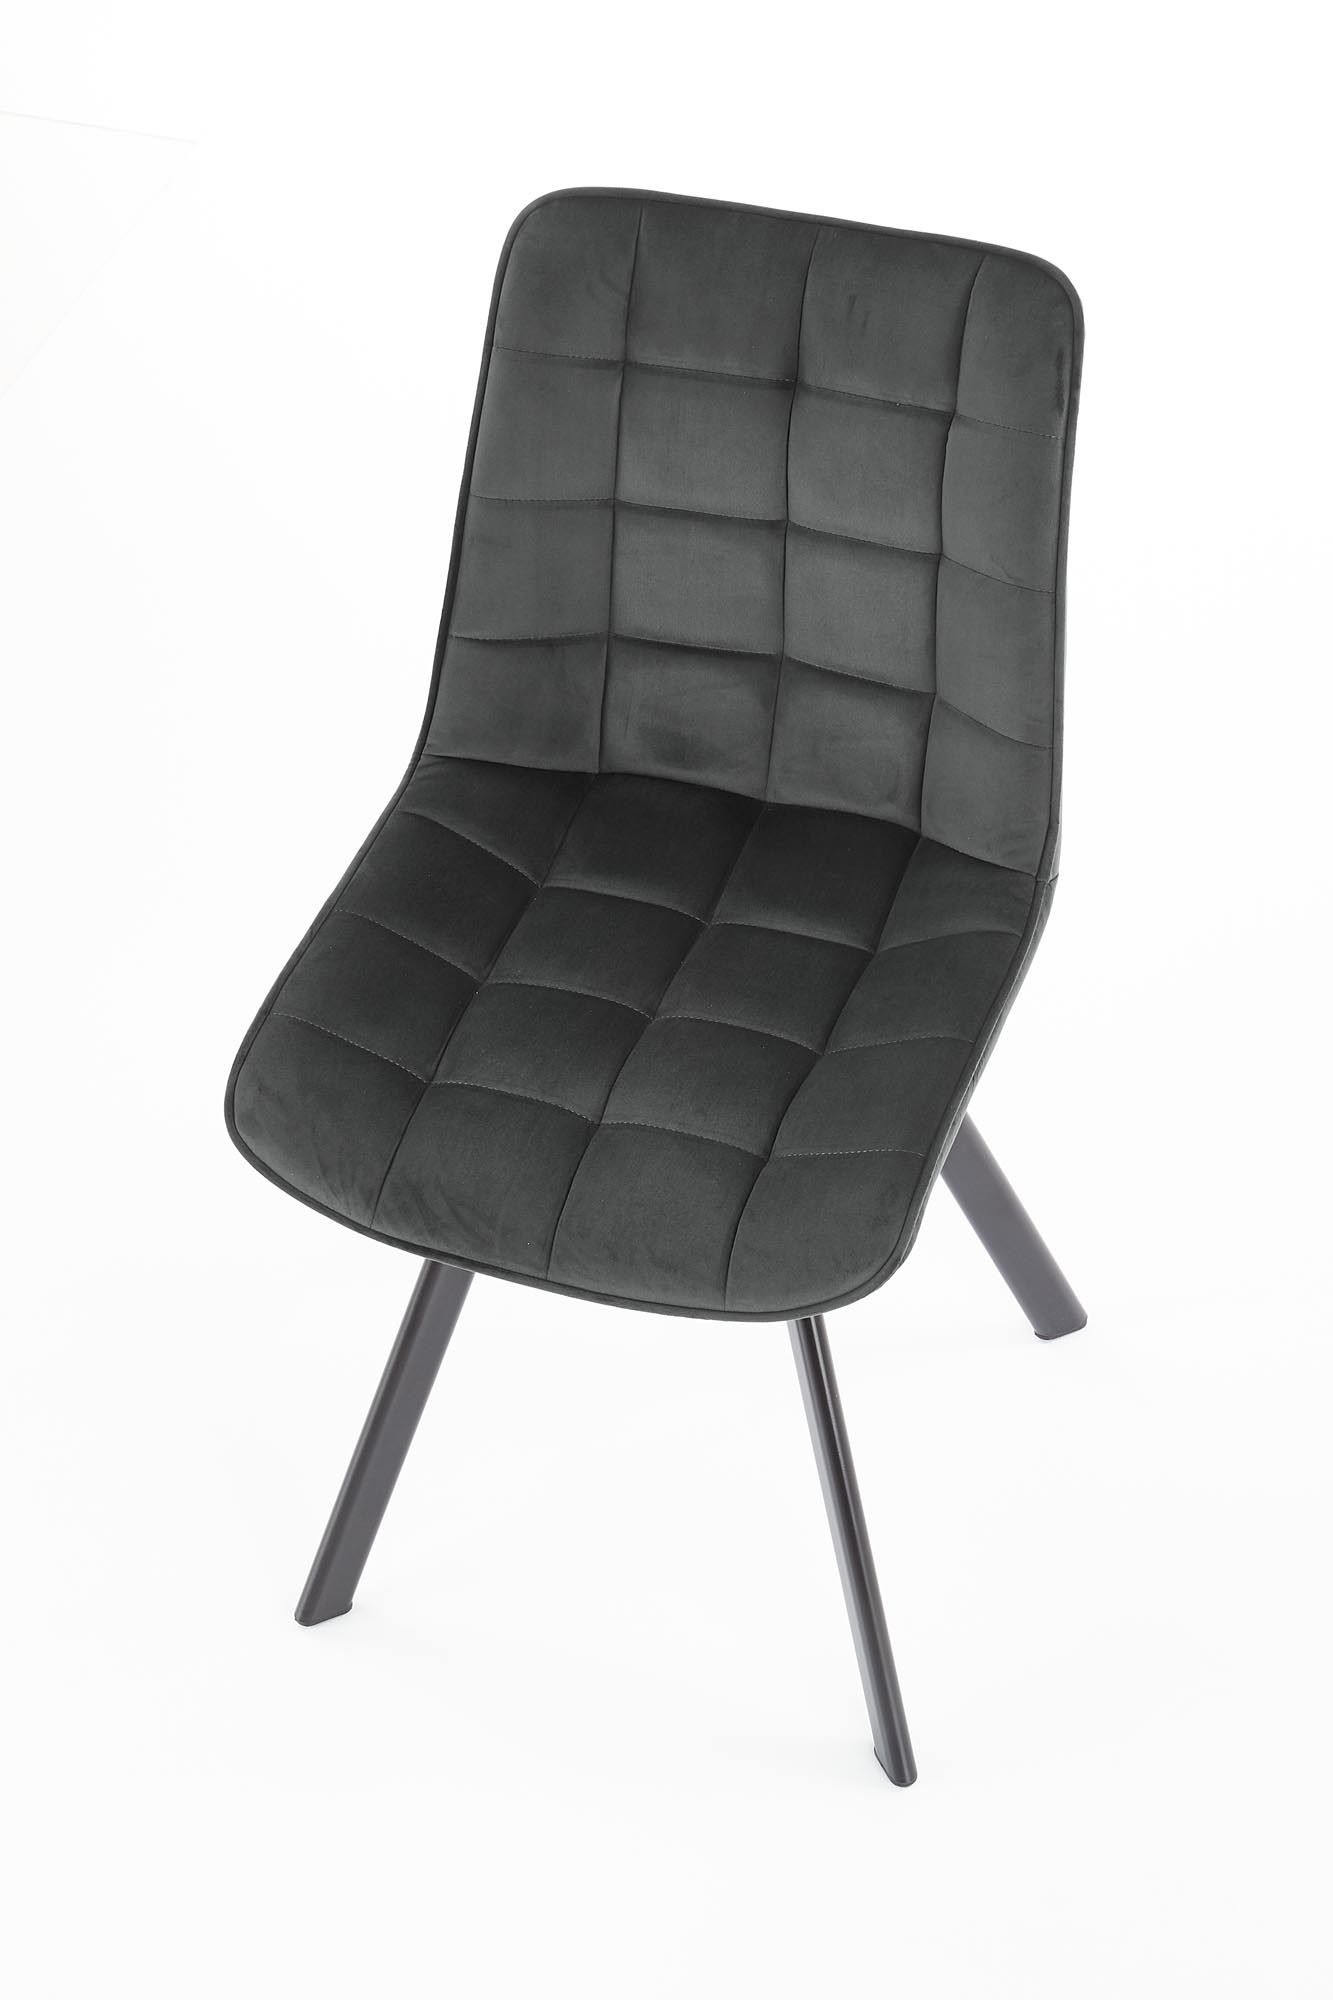 Čalouněná židle K332 - černá / tmavě popelová Židle čalouněné k332 - černé/tmavý popel